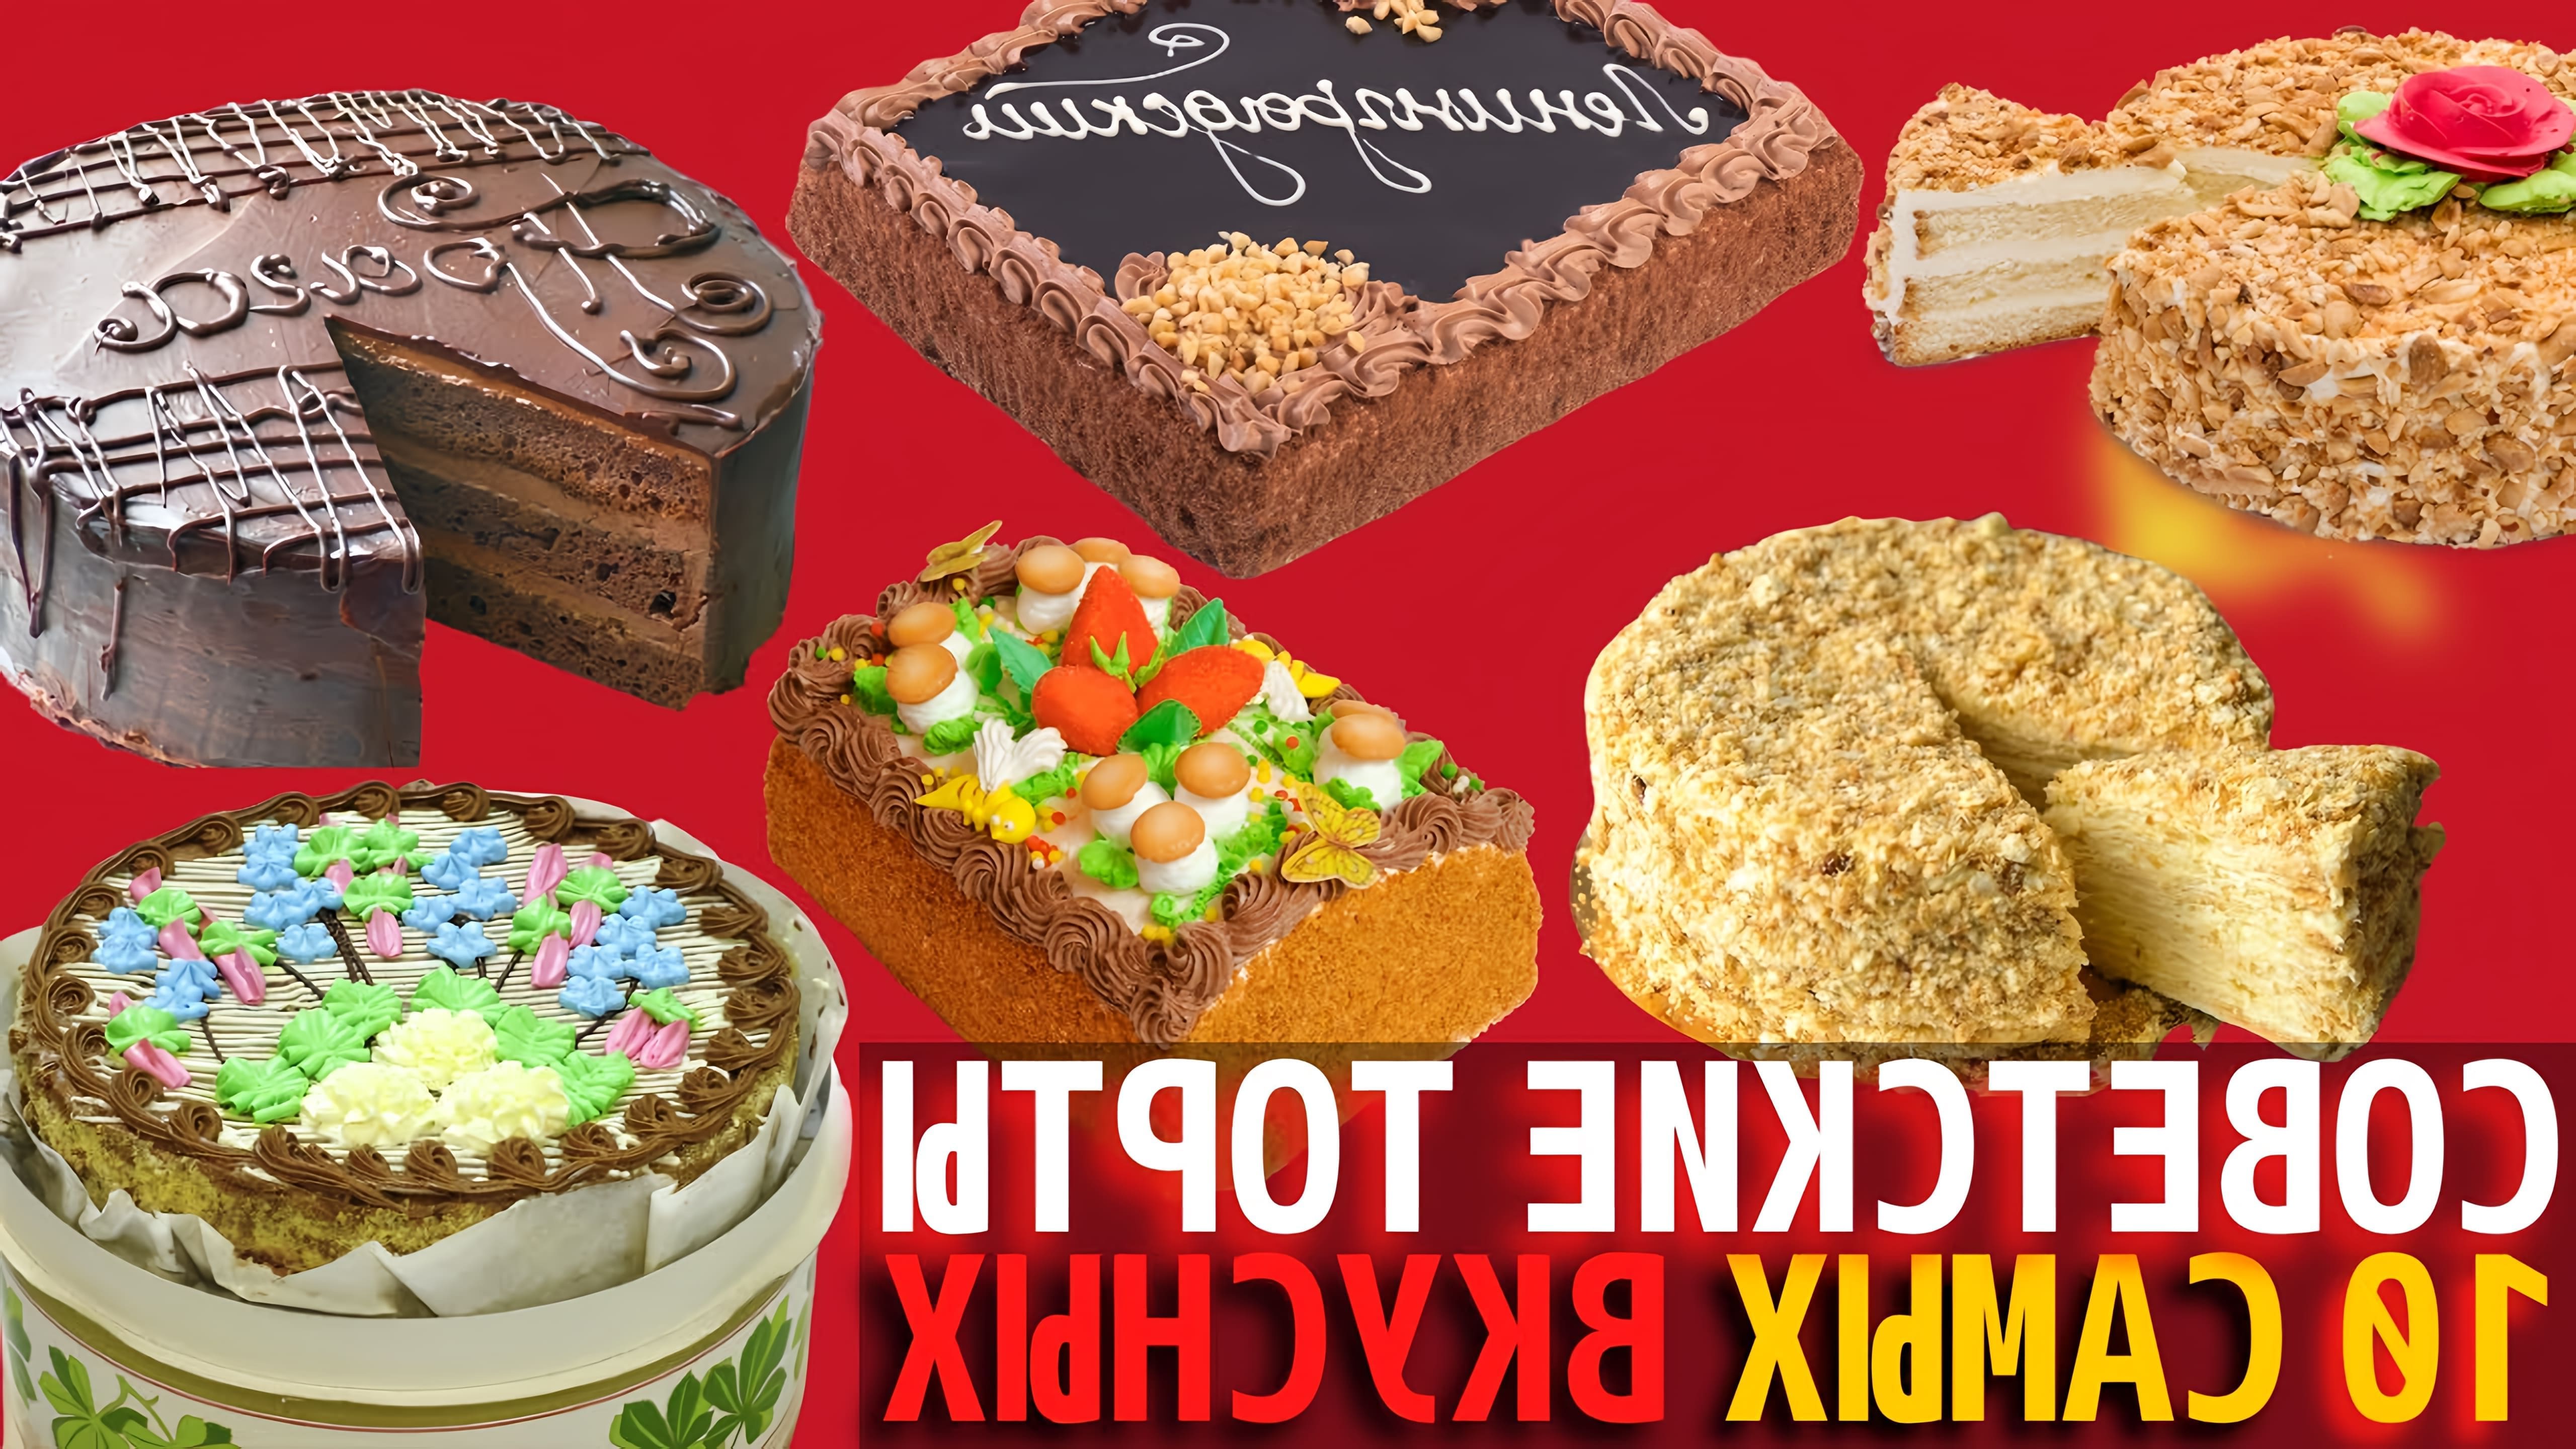 Торты и десерты играли важную роль в советских празднованиях и праздниках, таких как дни рождения и Новый год